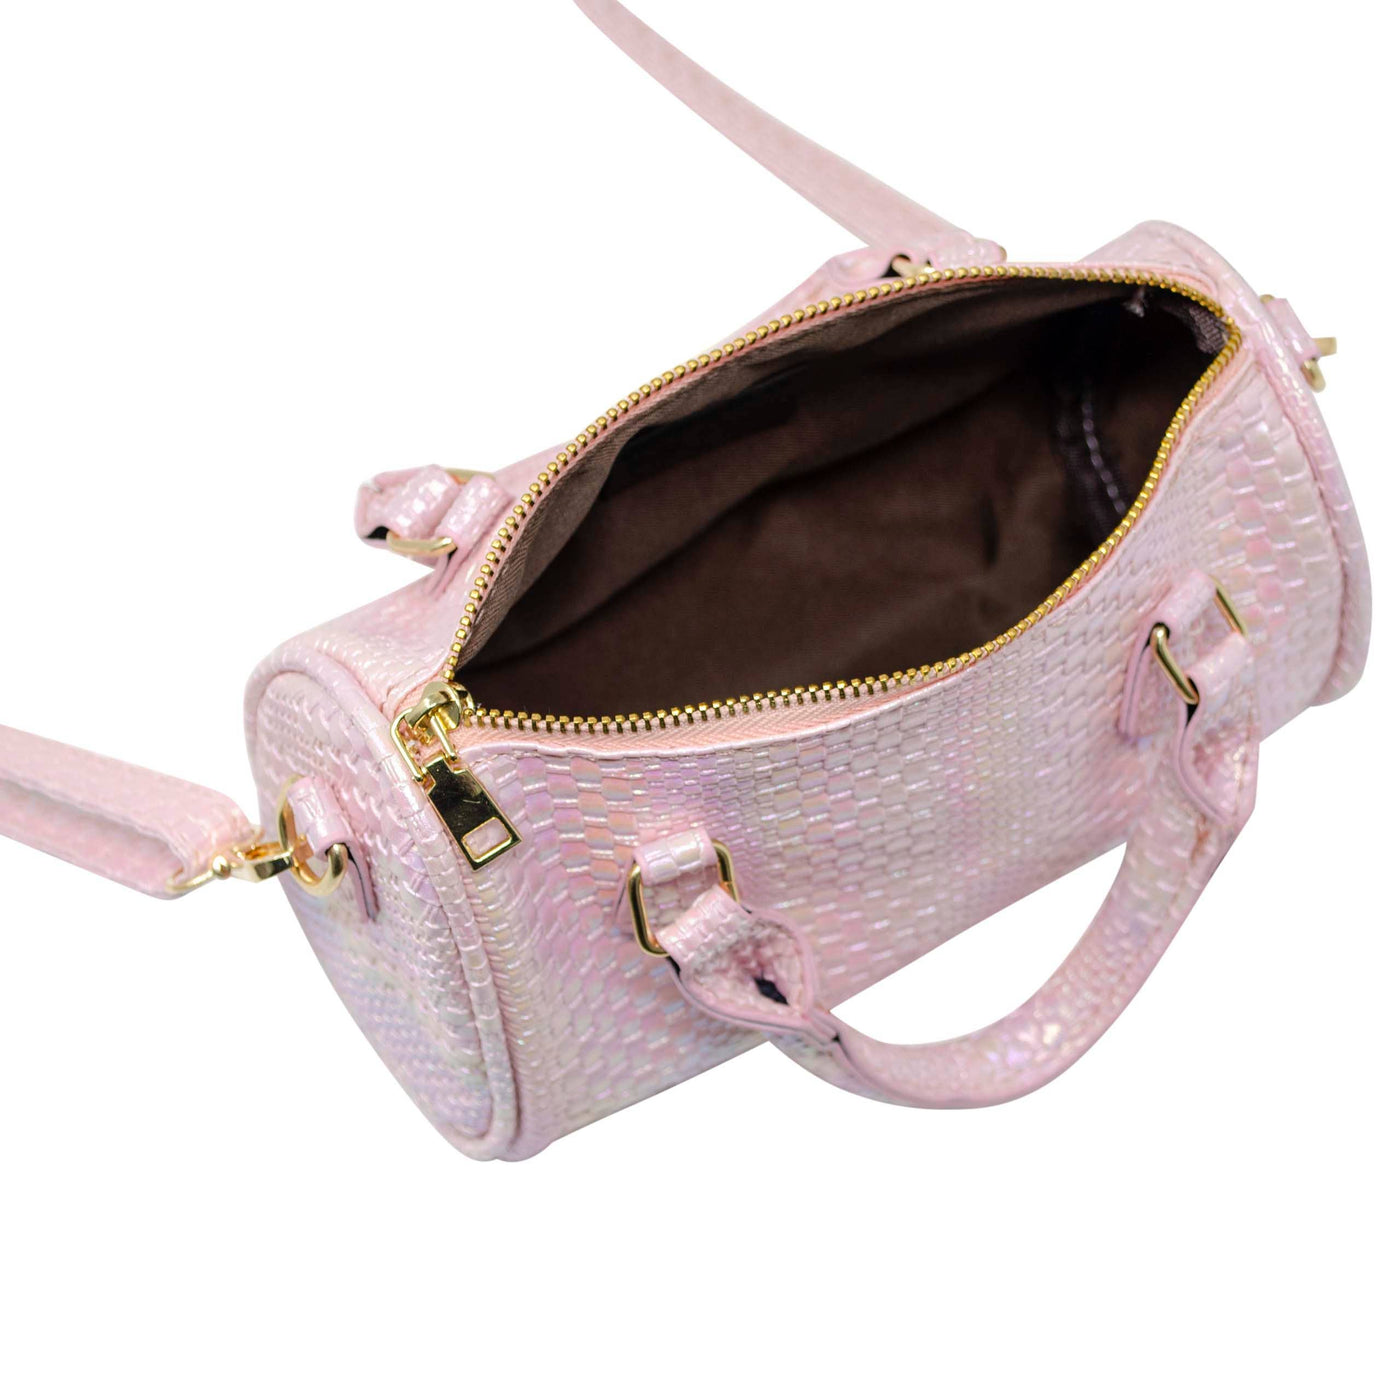 Rainbow Woven Duffle Handbag: Pink